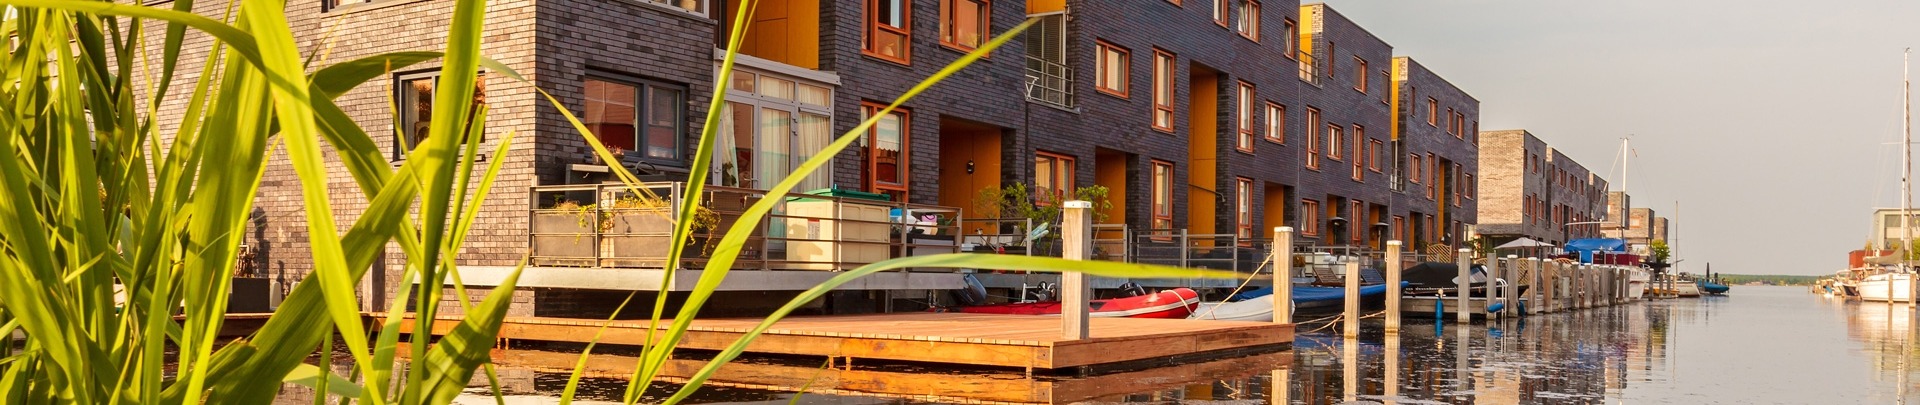 Een rij huizen bij het water in Almere